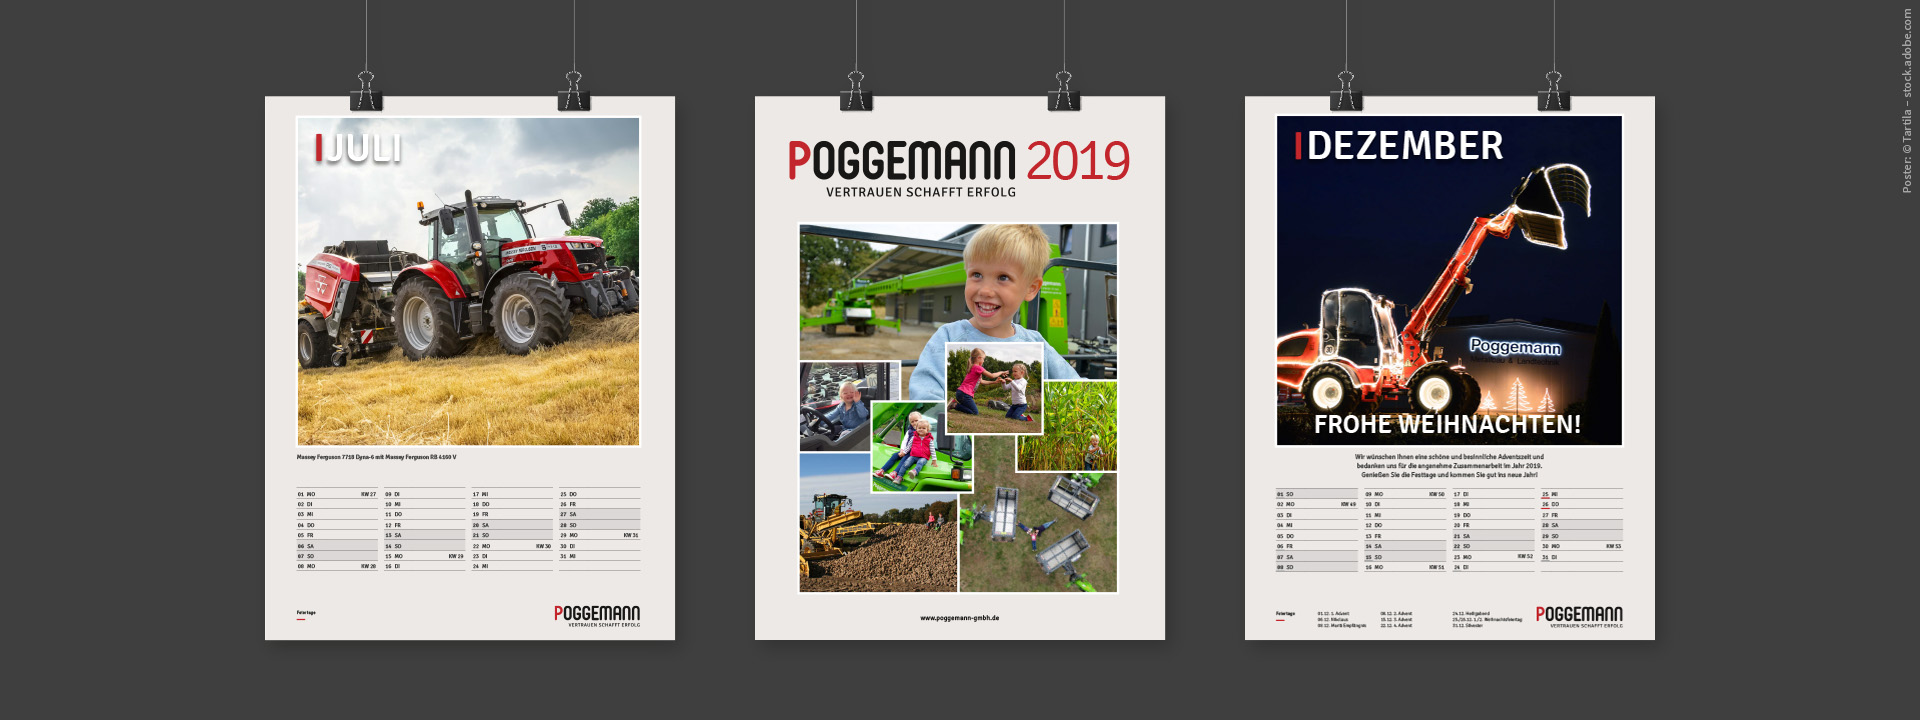 Die Poggemann GmbH erweitert sich